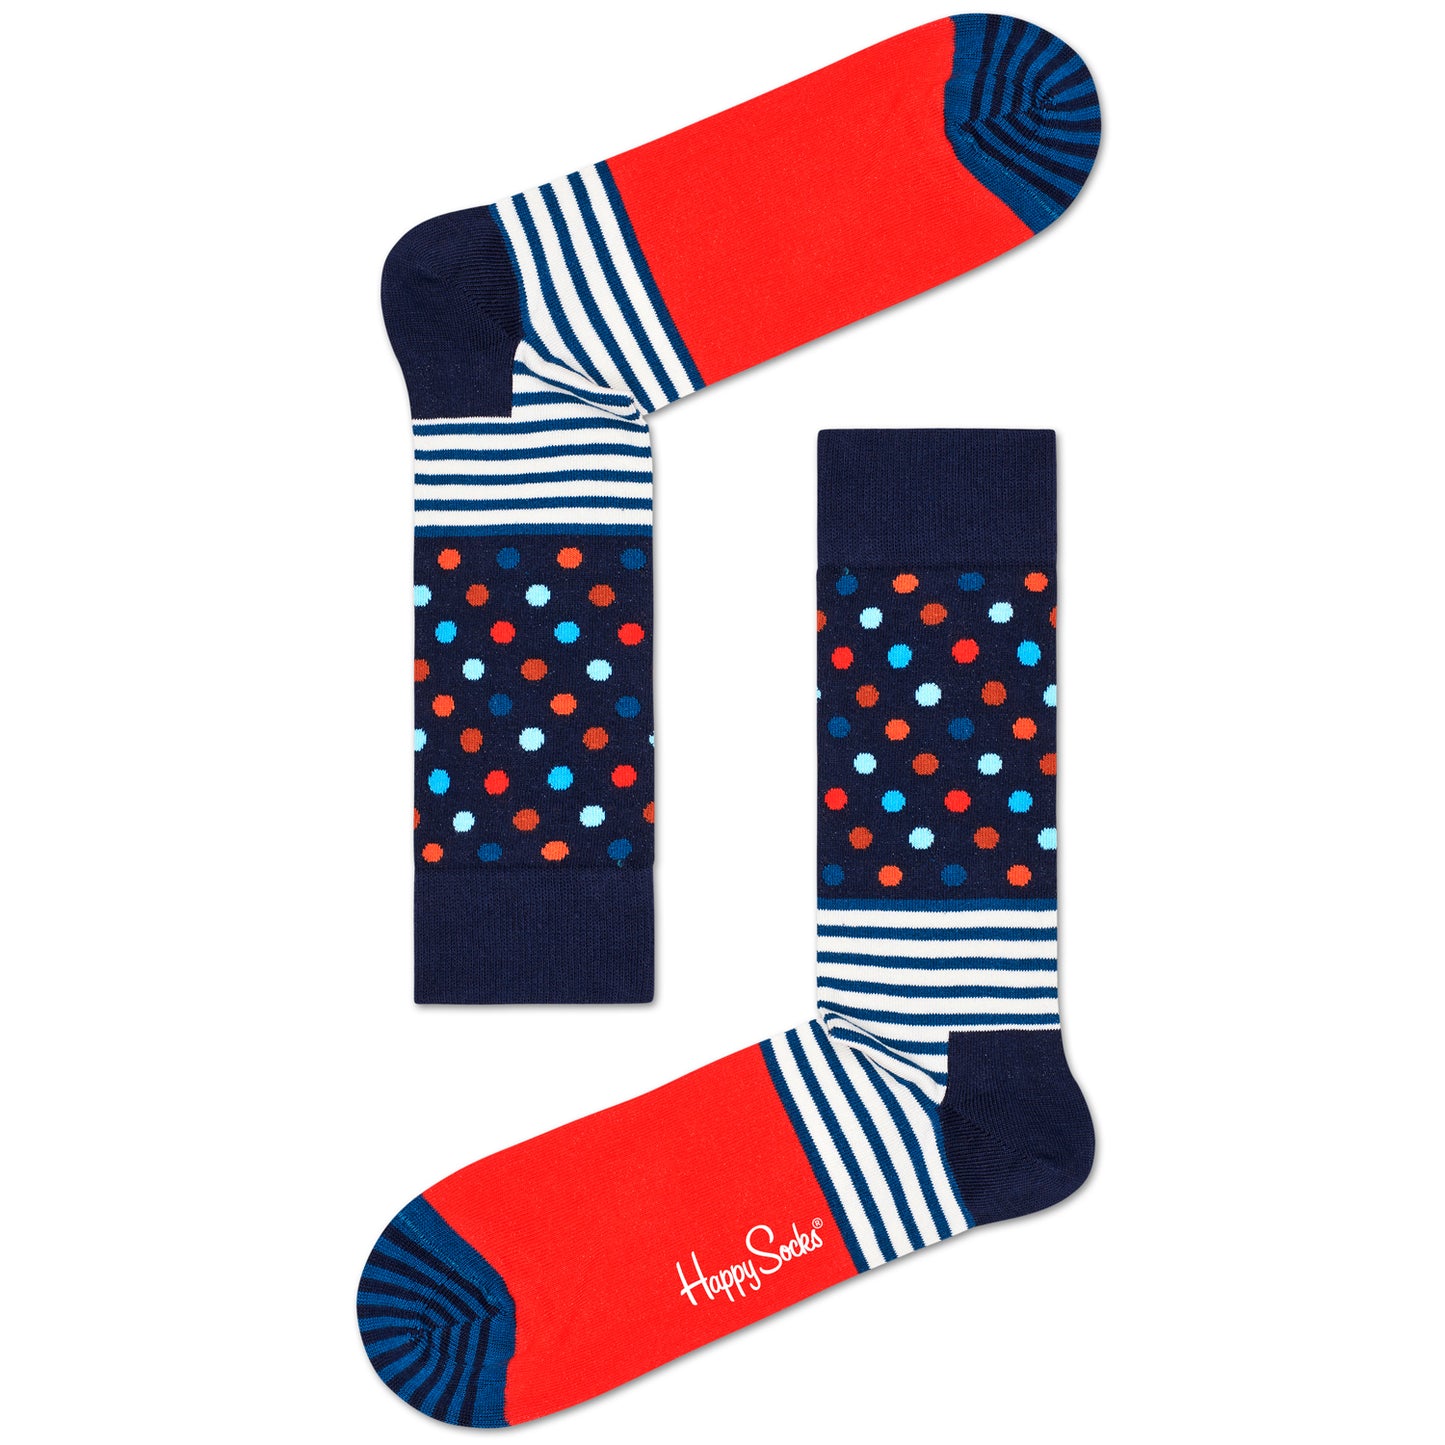 Happy Socks Men's Crew Socks - Stripes & Dots